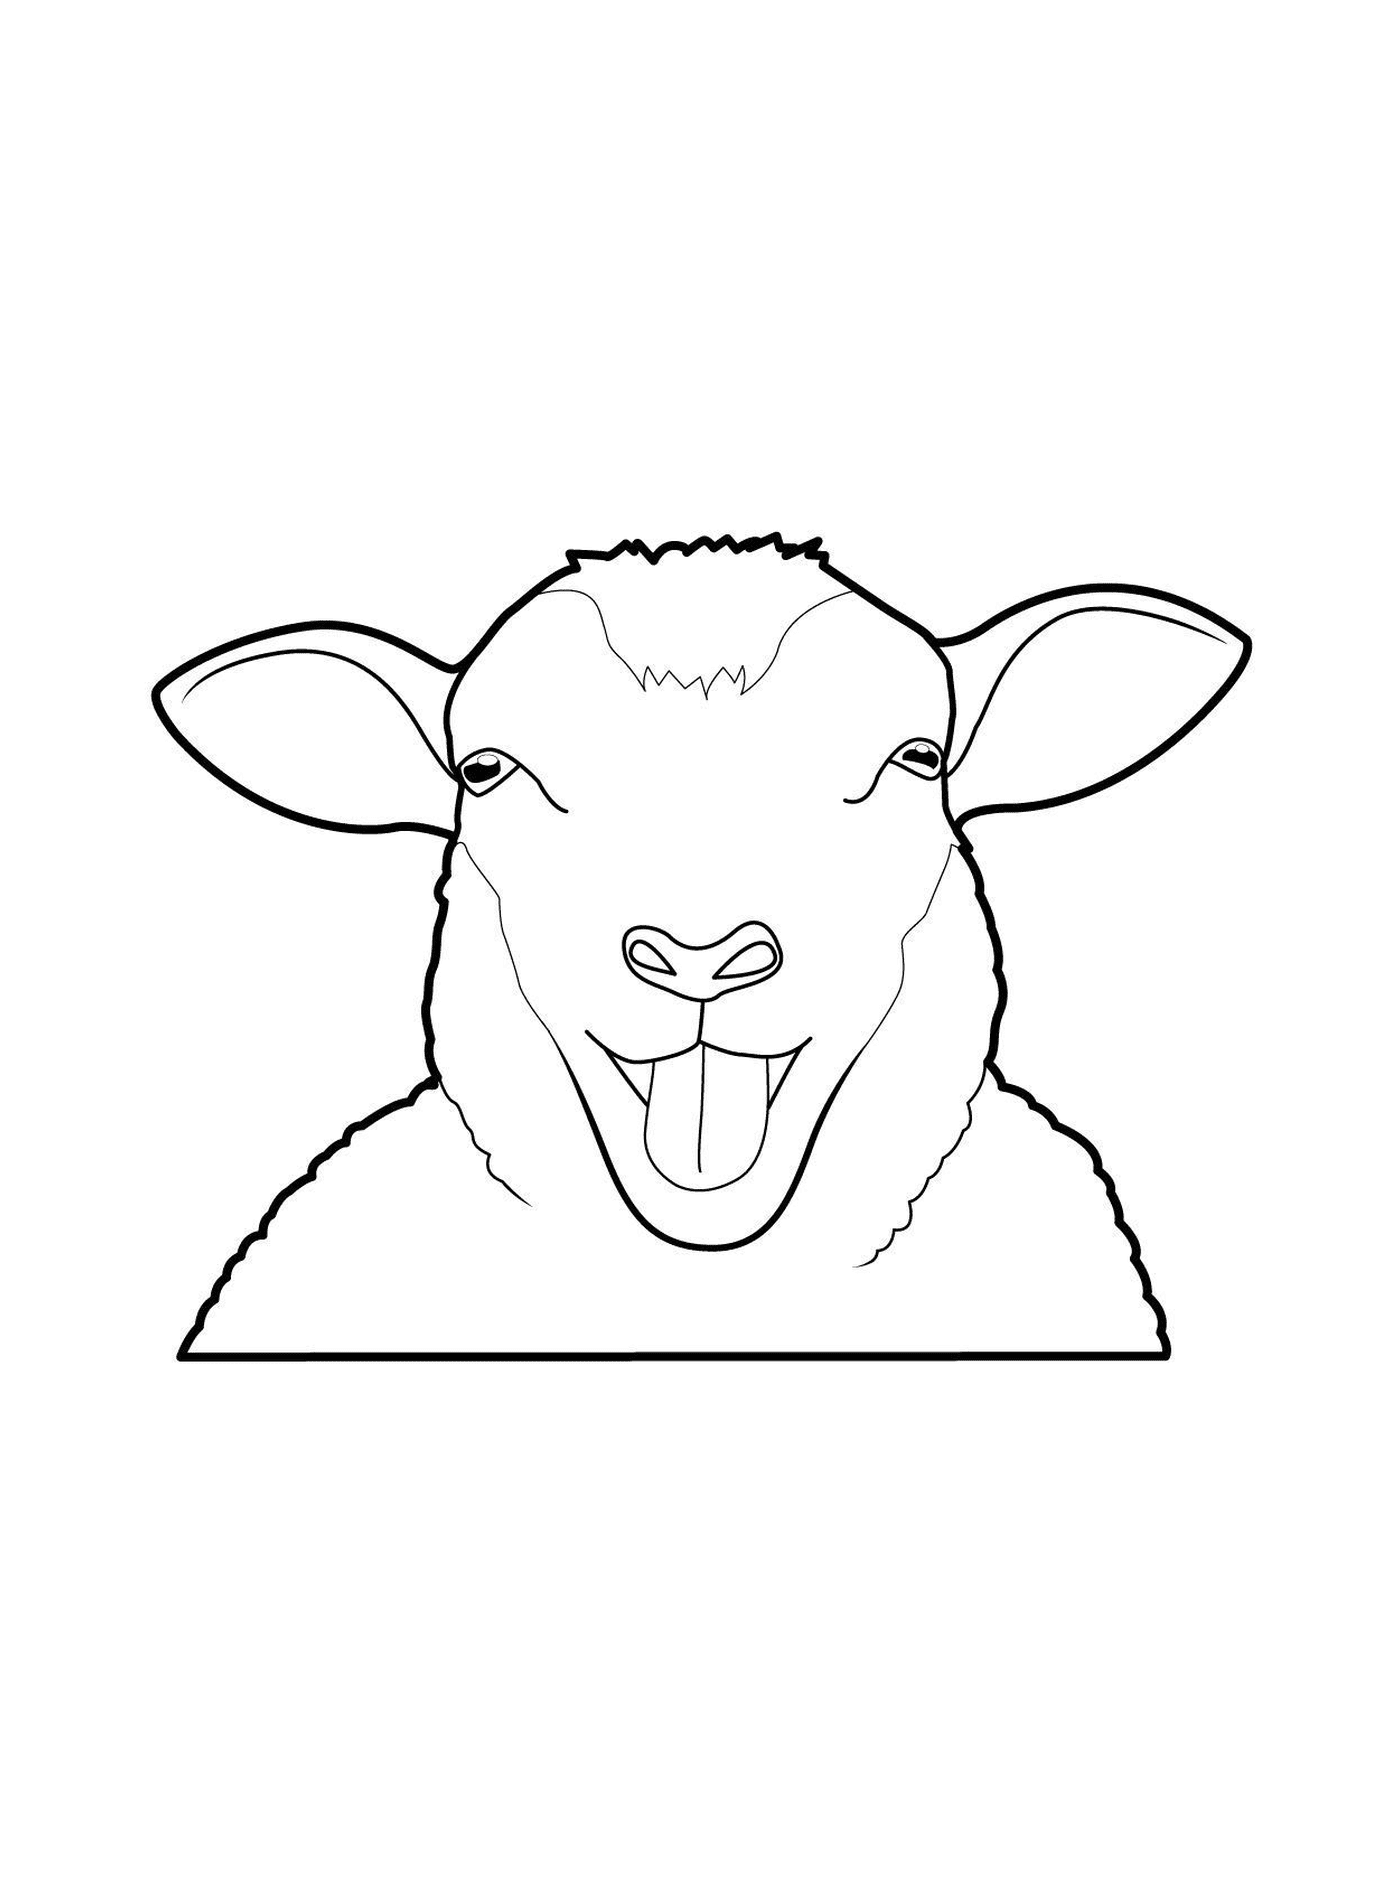  La pecora tira la lingua 